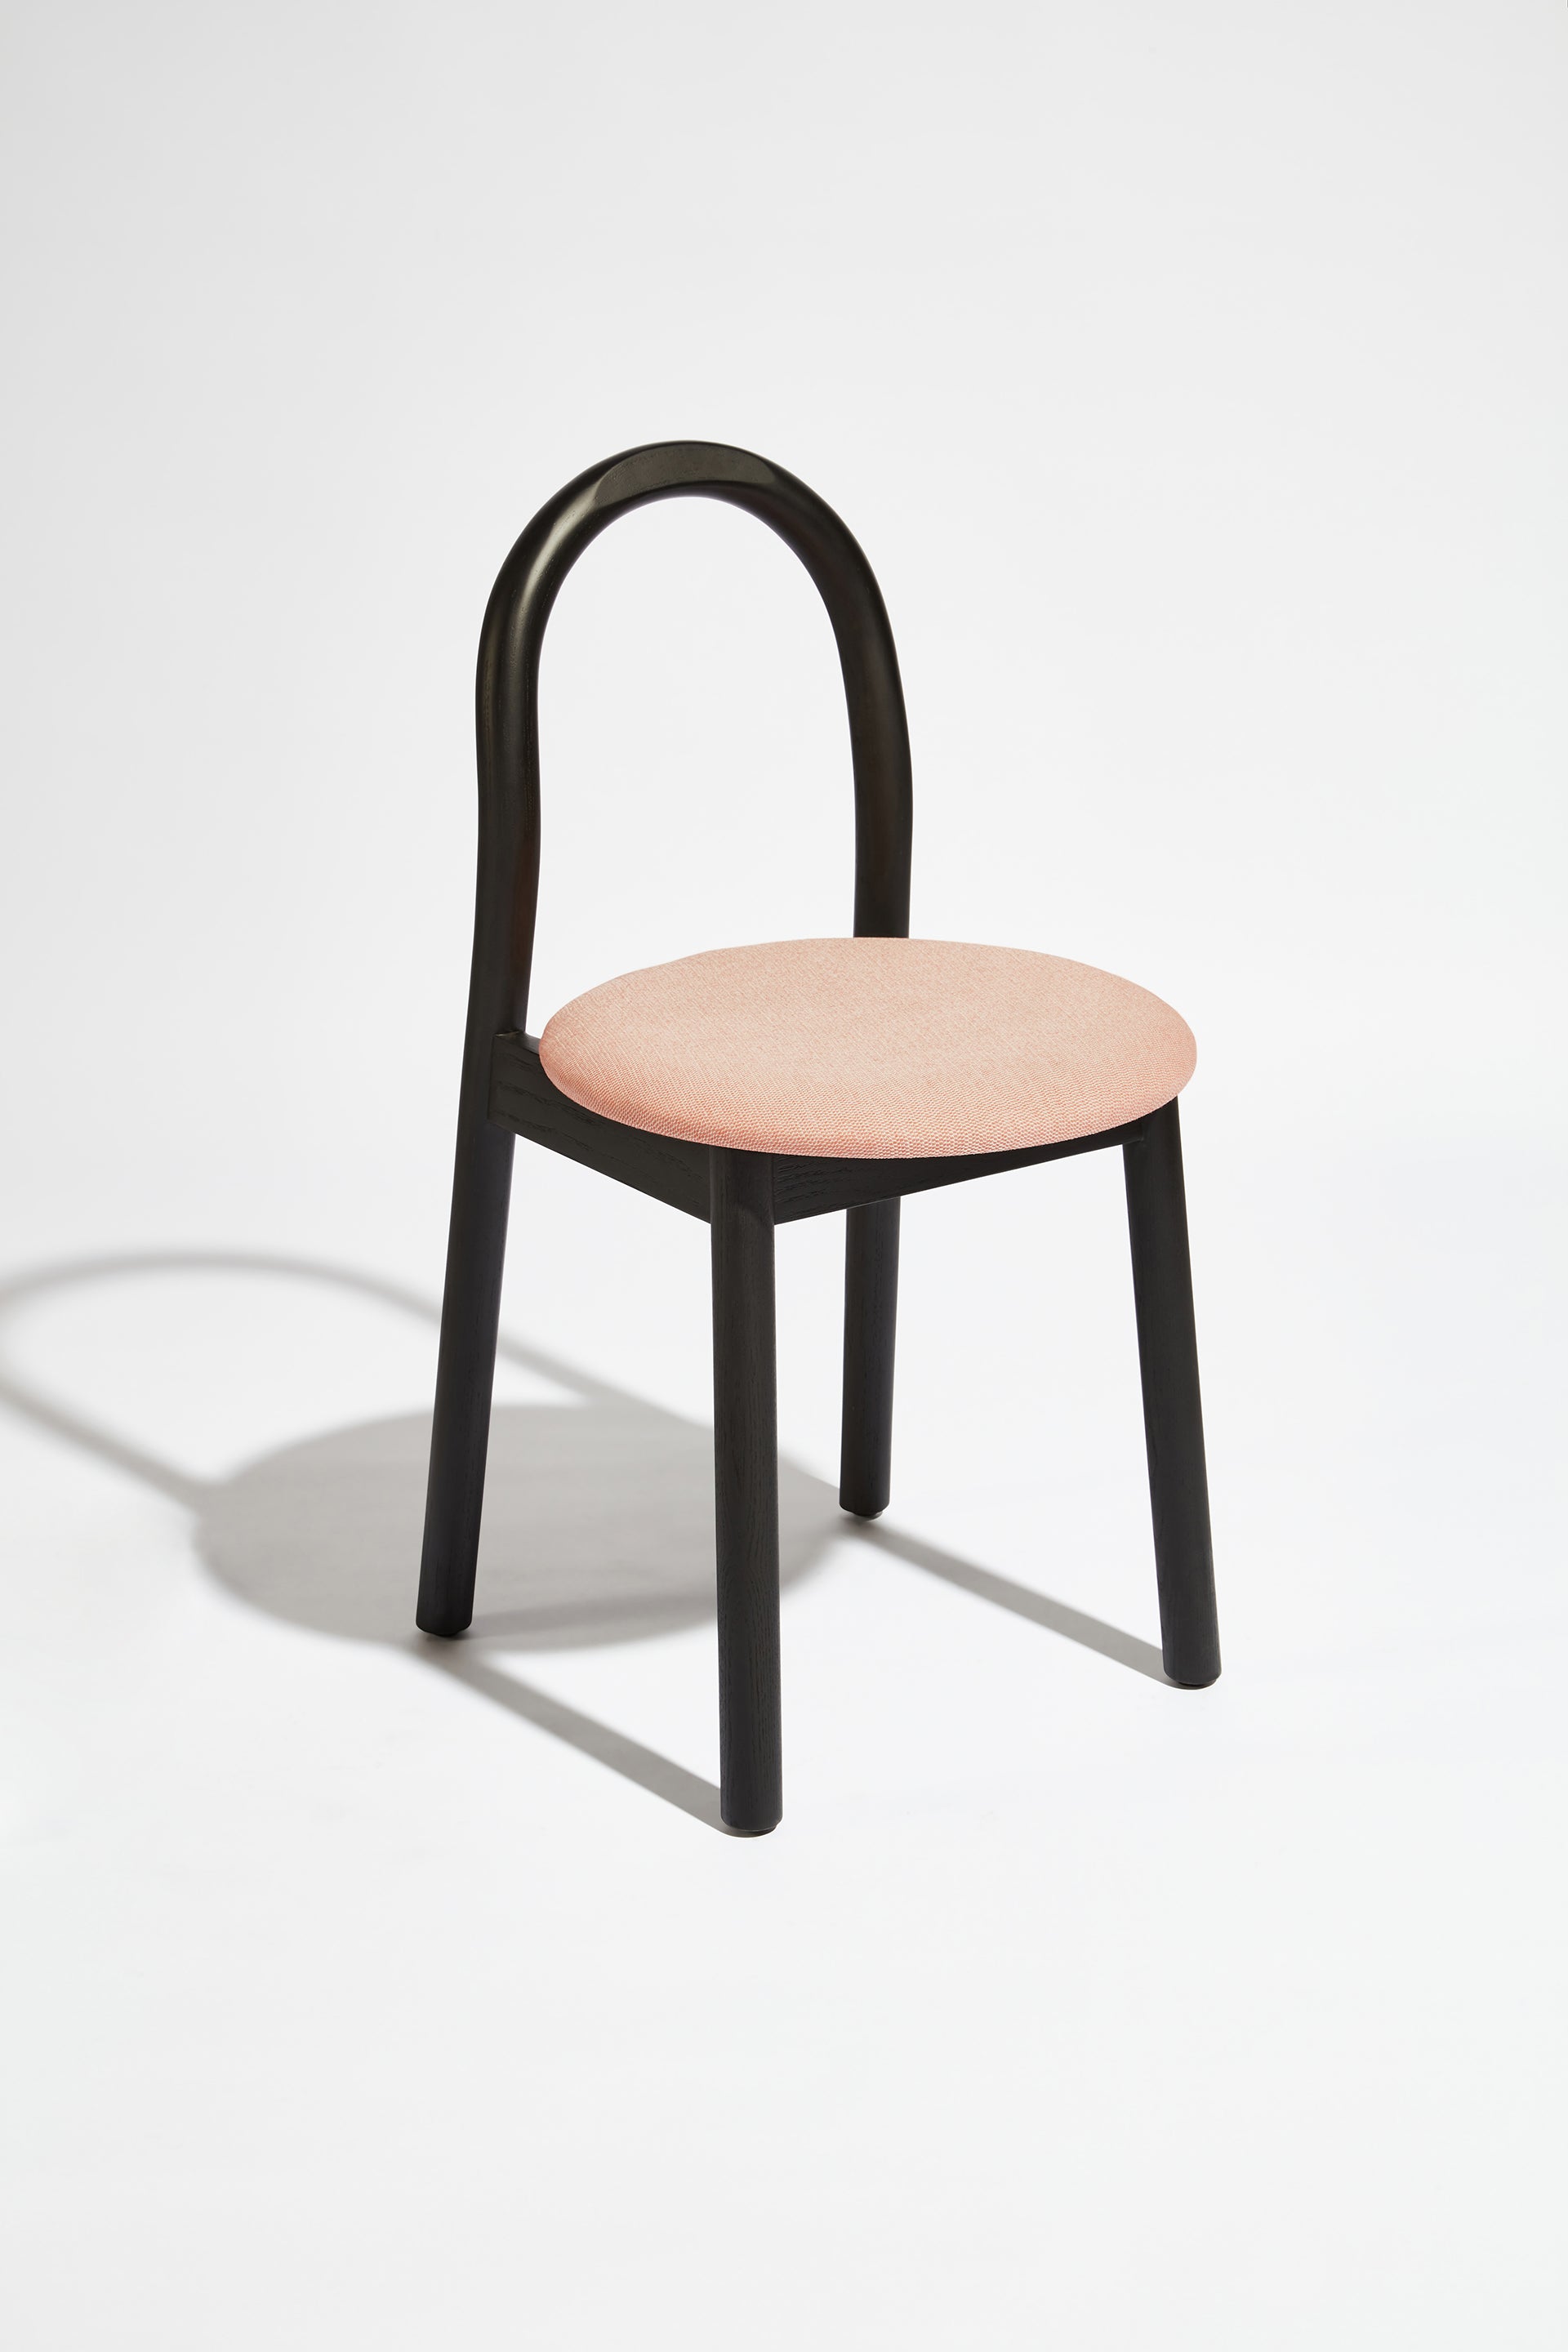 Bobby Chair Upholstered | Black Timber Wooden Dining Chair | Daniel Tucker | DesignByThem ** HF2 Messenger - 097 Krill / Black Stained Ash